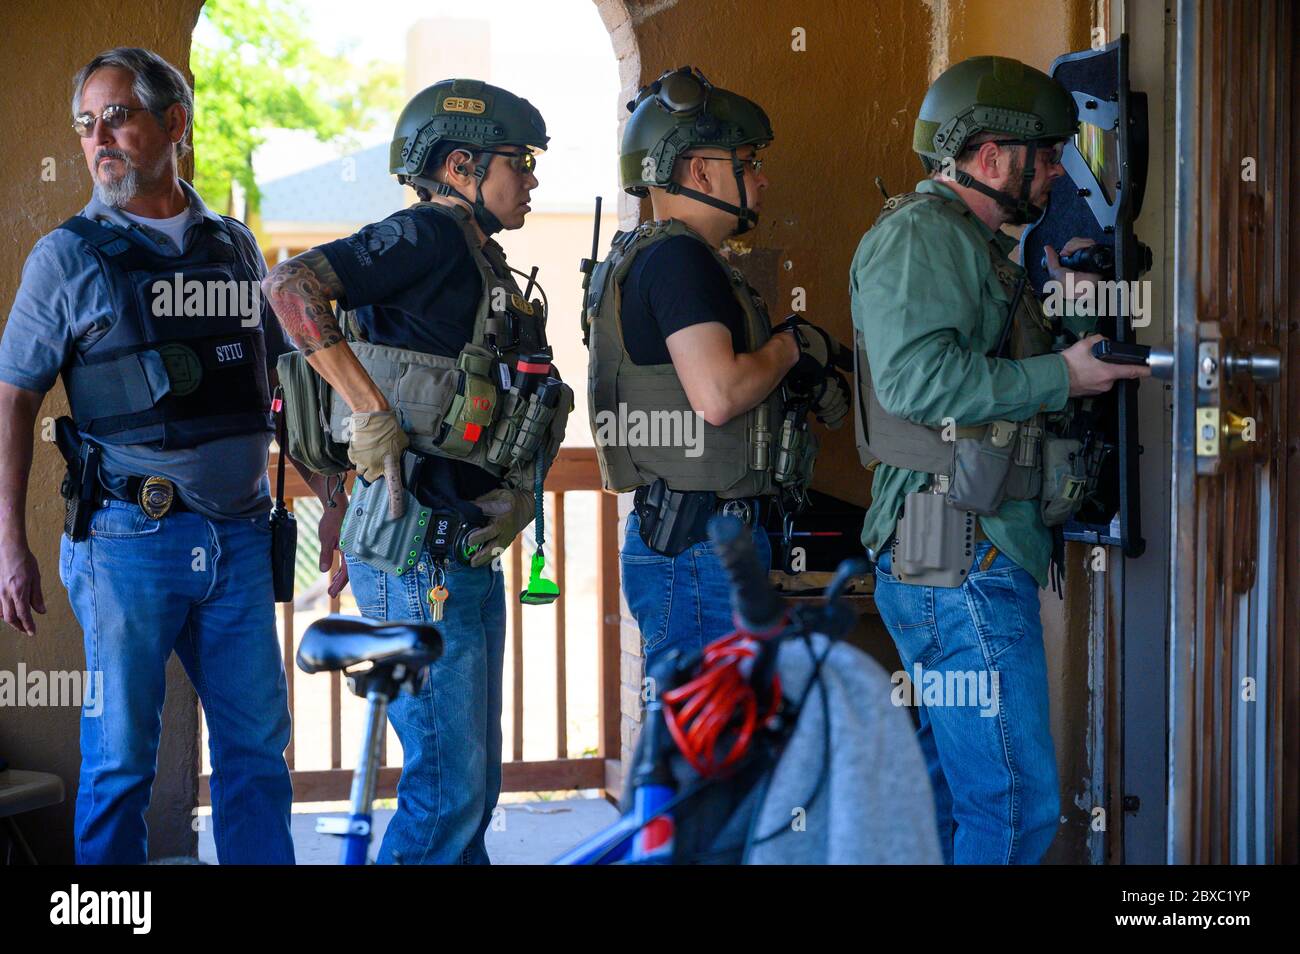 US-Marschalls und lokale Polizei bereiten sich darauf vor, während der 90-tägigen, mehrstaatlichen Operation Triple Beam 26. Juli 2019 in Albuquerque, New Mexico, eine Tür zu durchbrechen, um einen Flüchtling zu suchen, der wegen Gewaltdelikten gesucht wurde. Die Operation führte zu mehr als 6,000 Verhaftungen in von Gewalt geplagten Gemeinden. Stockfoto